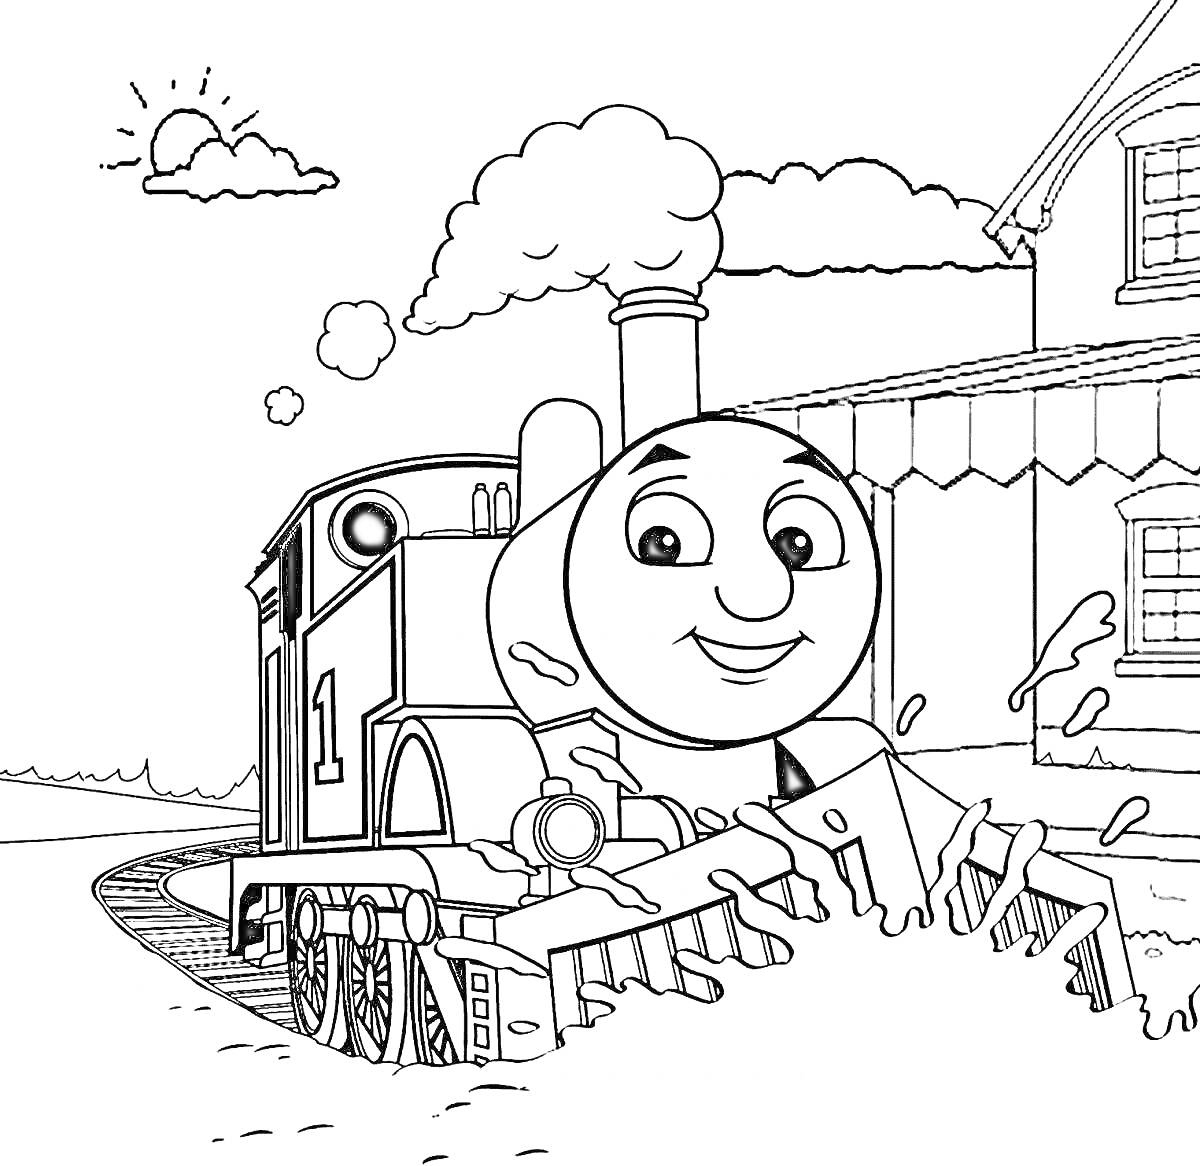 Раскраска Томас паровозик на железной дороге рядом с домом и солнечным небом